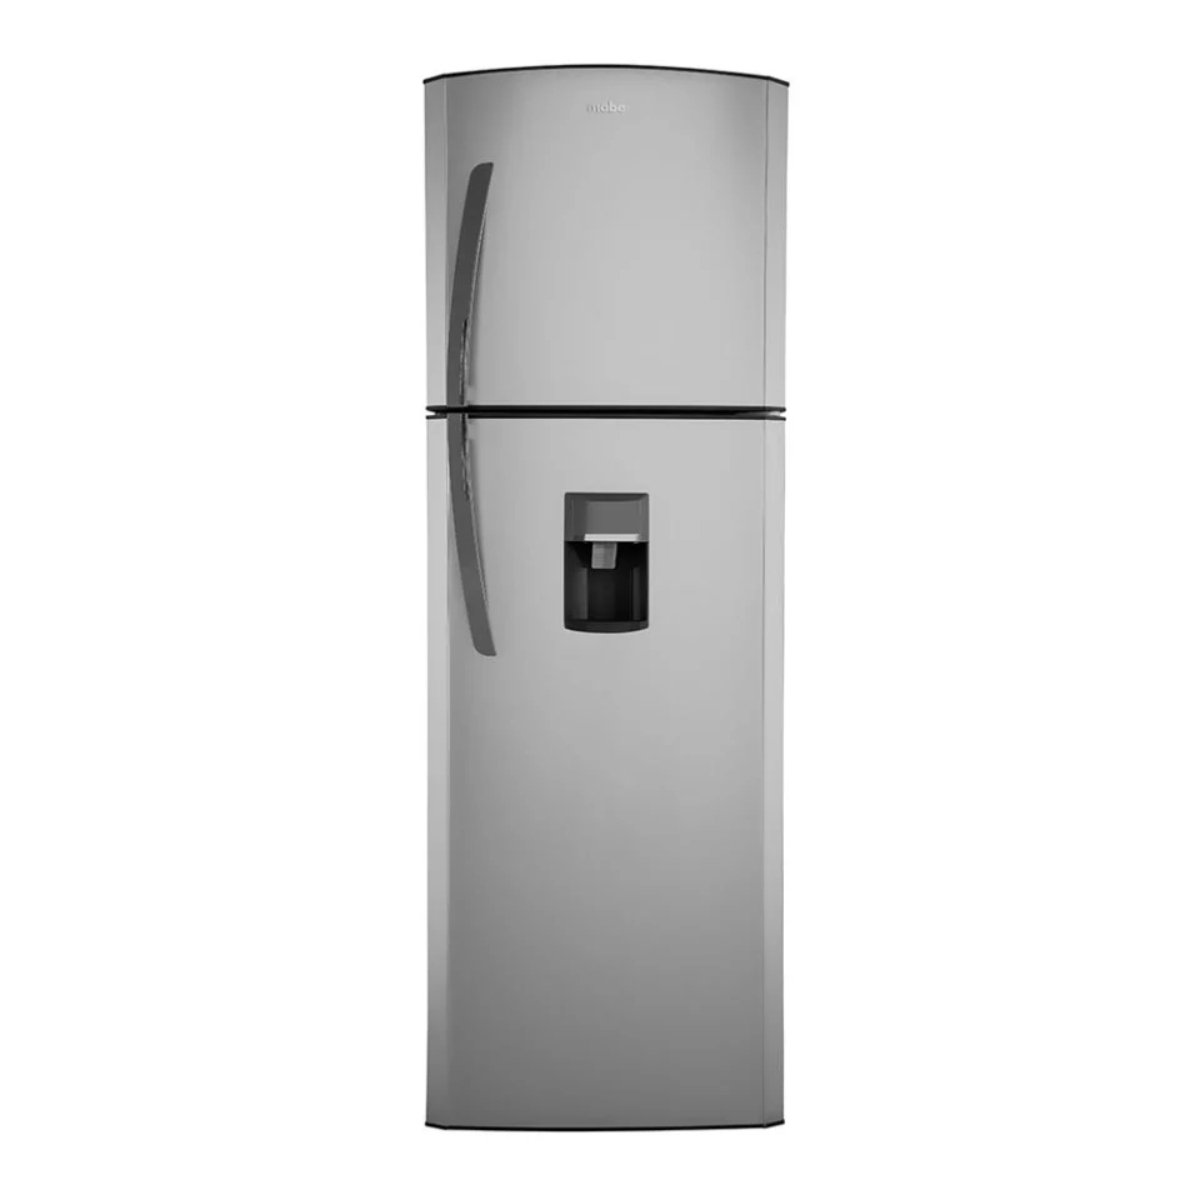  Refrigerador eléctrico portátil de 63 cuartos de galón